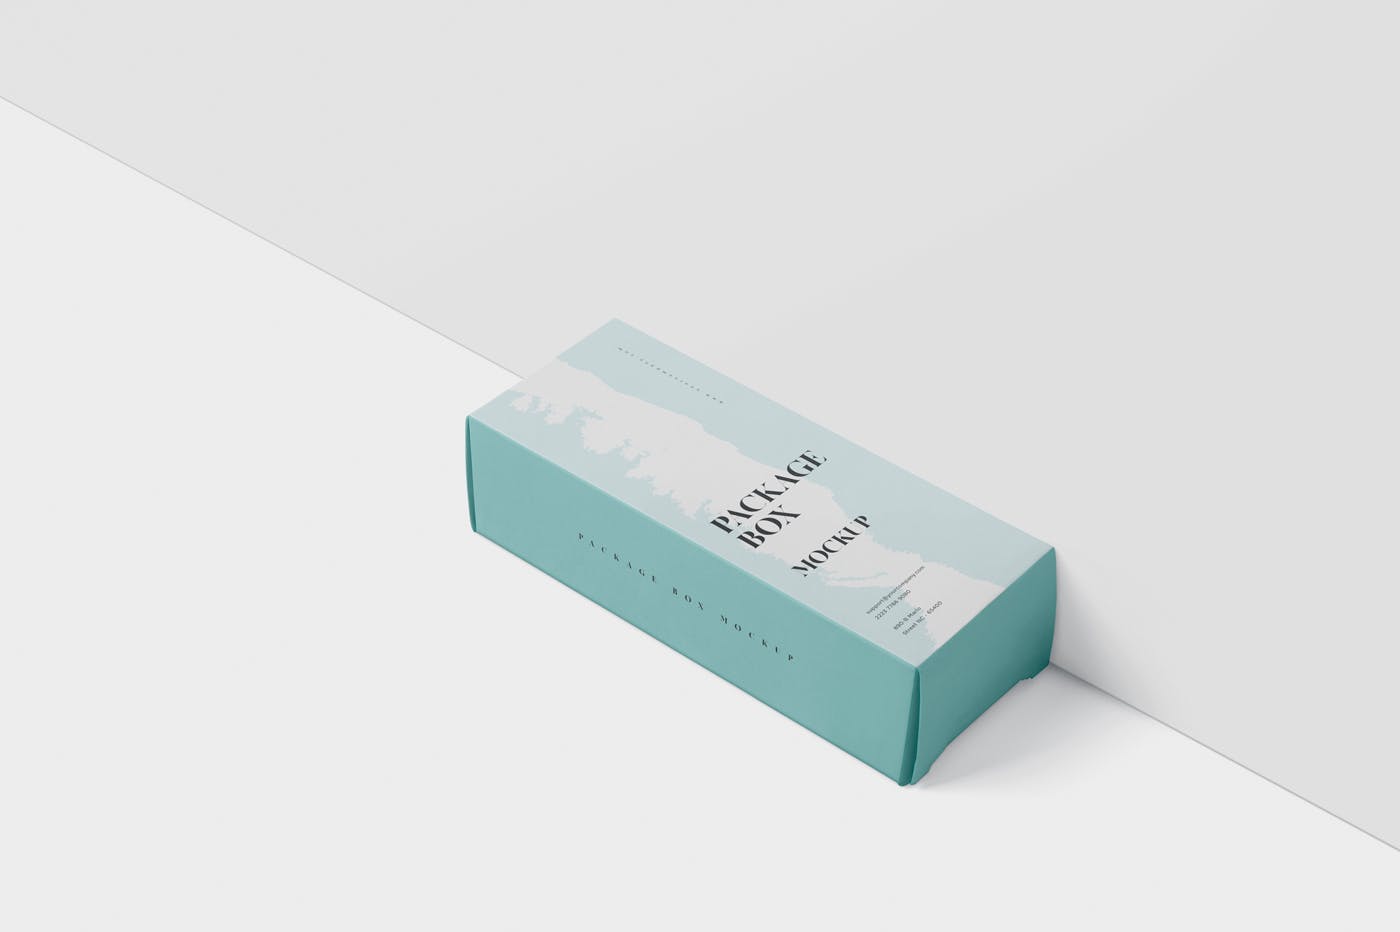 简约风多用途产品包装纸盒设计效果图素材库精选 Package Box Mock-Up – High Rectangle Shape插图(3)